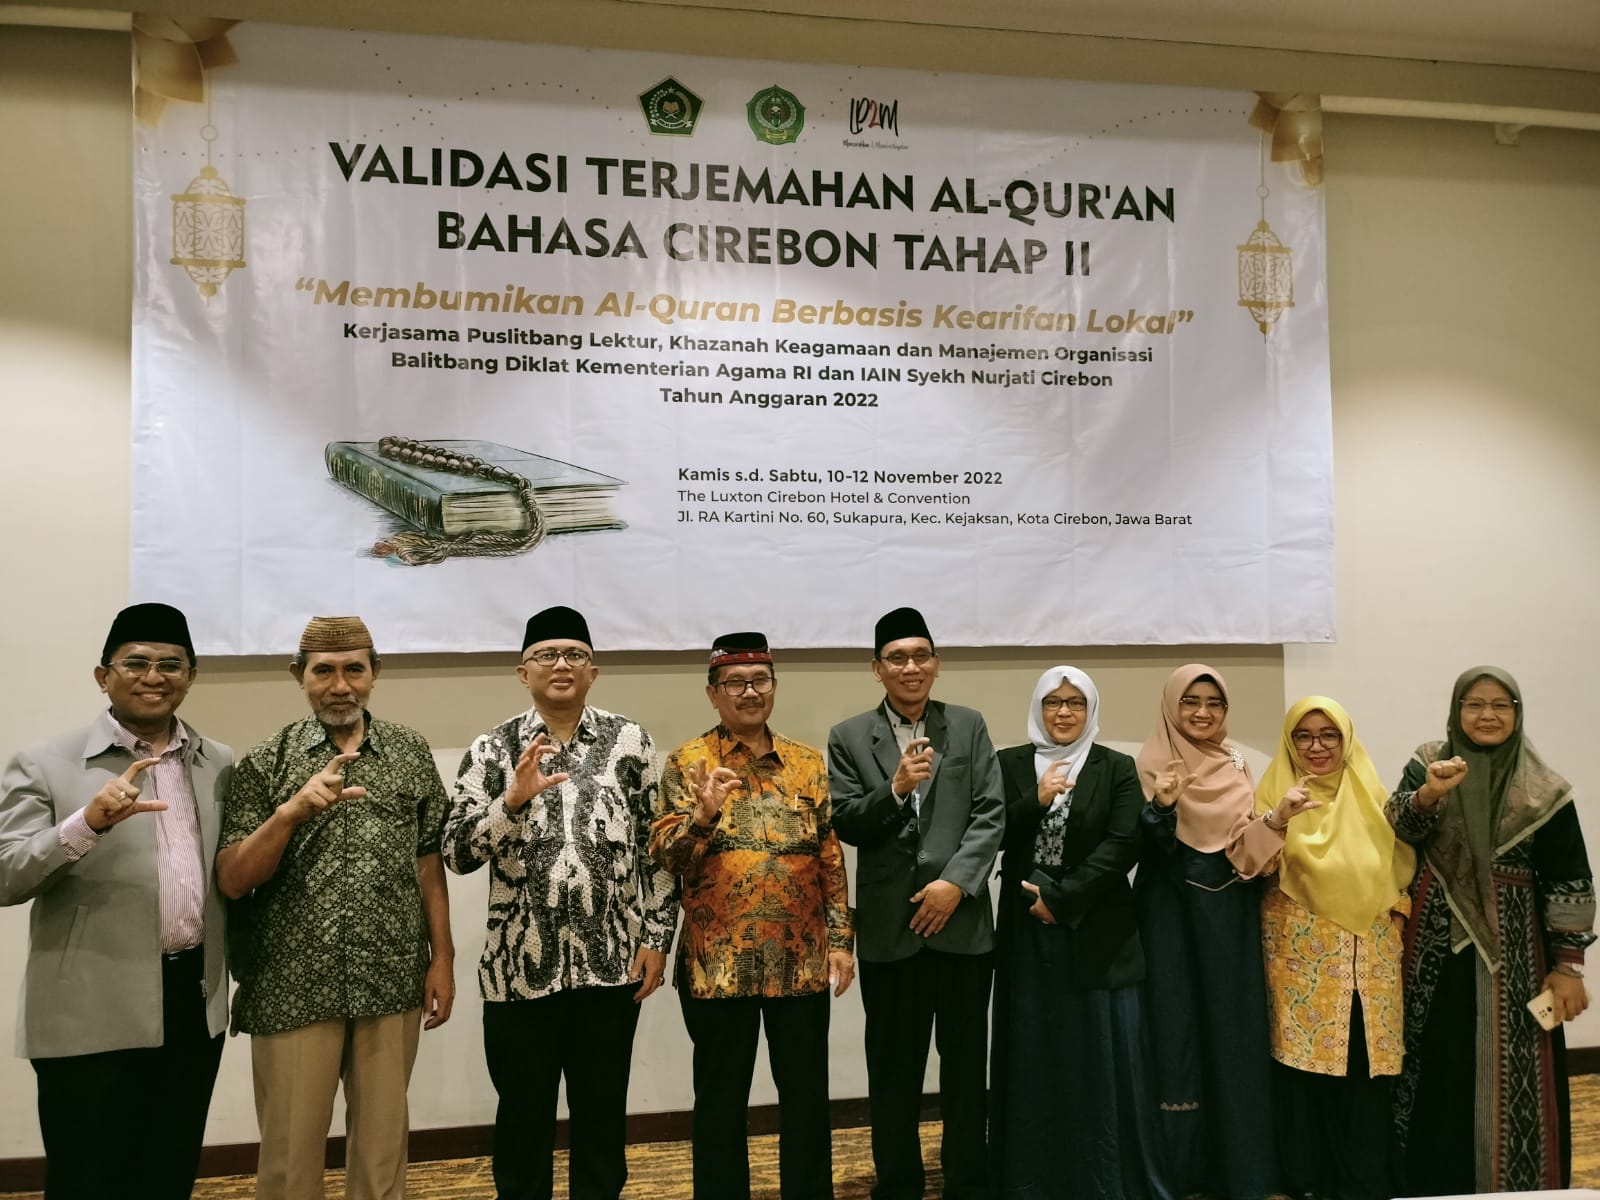 Al-Quran Terjemah Bahasa Cirebon Rampung Akhir Tahun